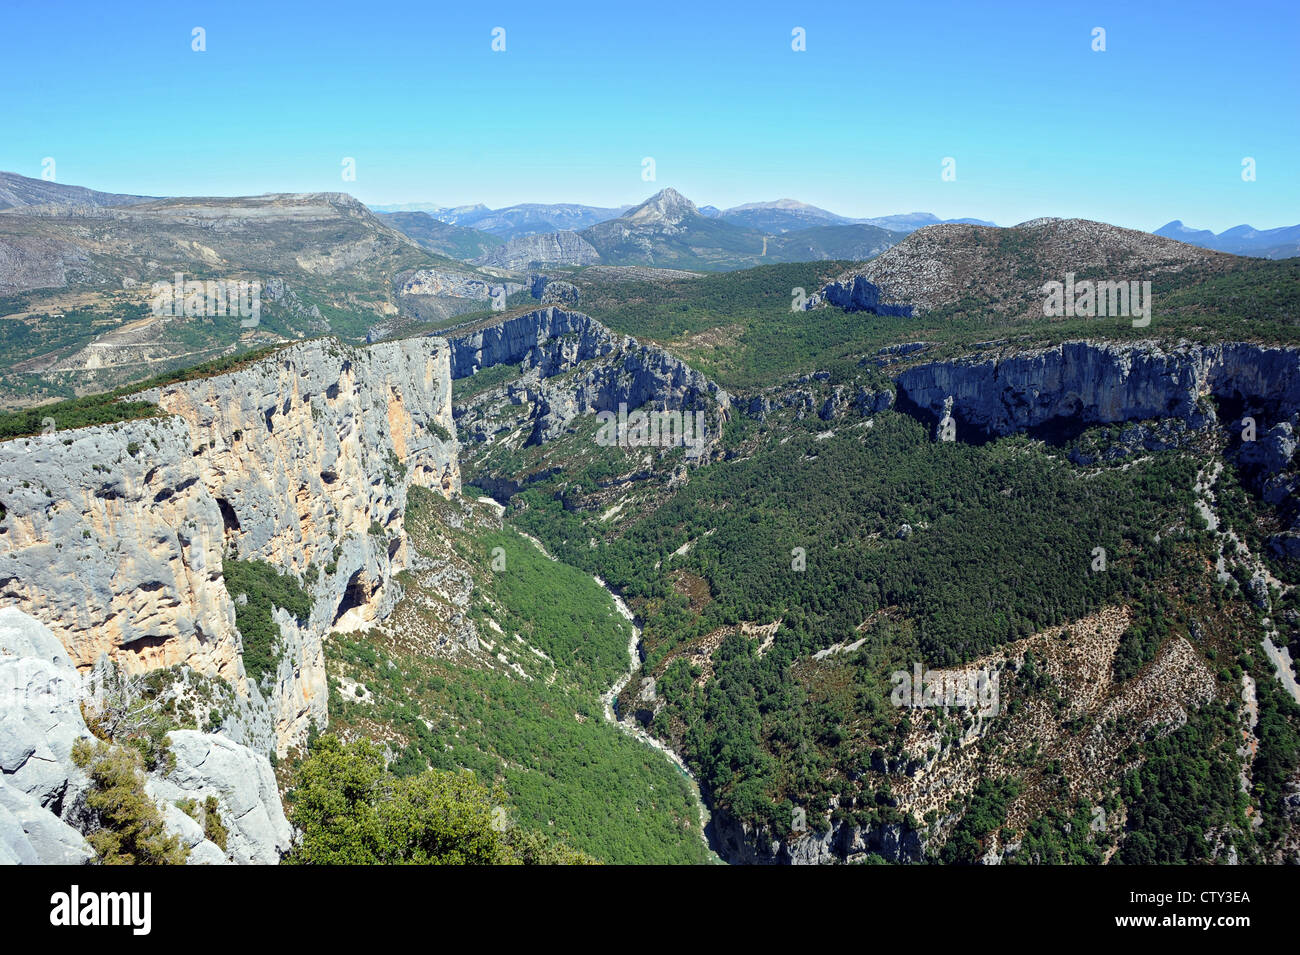 Sur le pittoresque Grand canyon des Gorges du Verdon, en Provence, dans le sud de la France. Banque D'Images